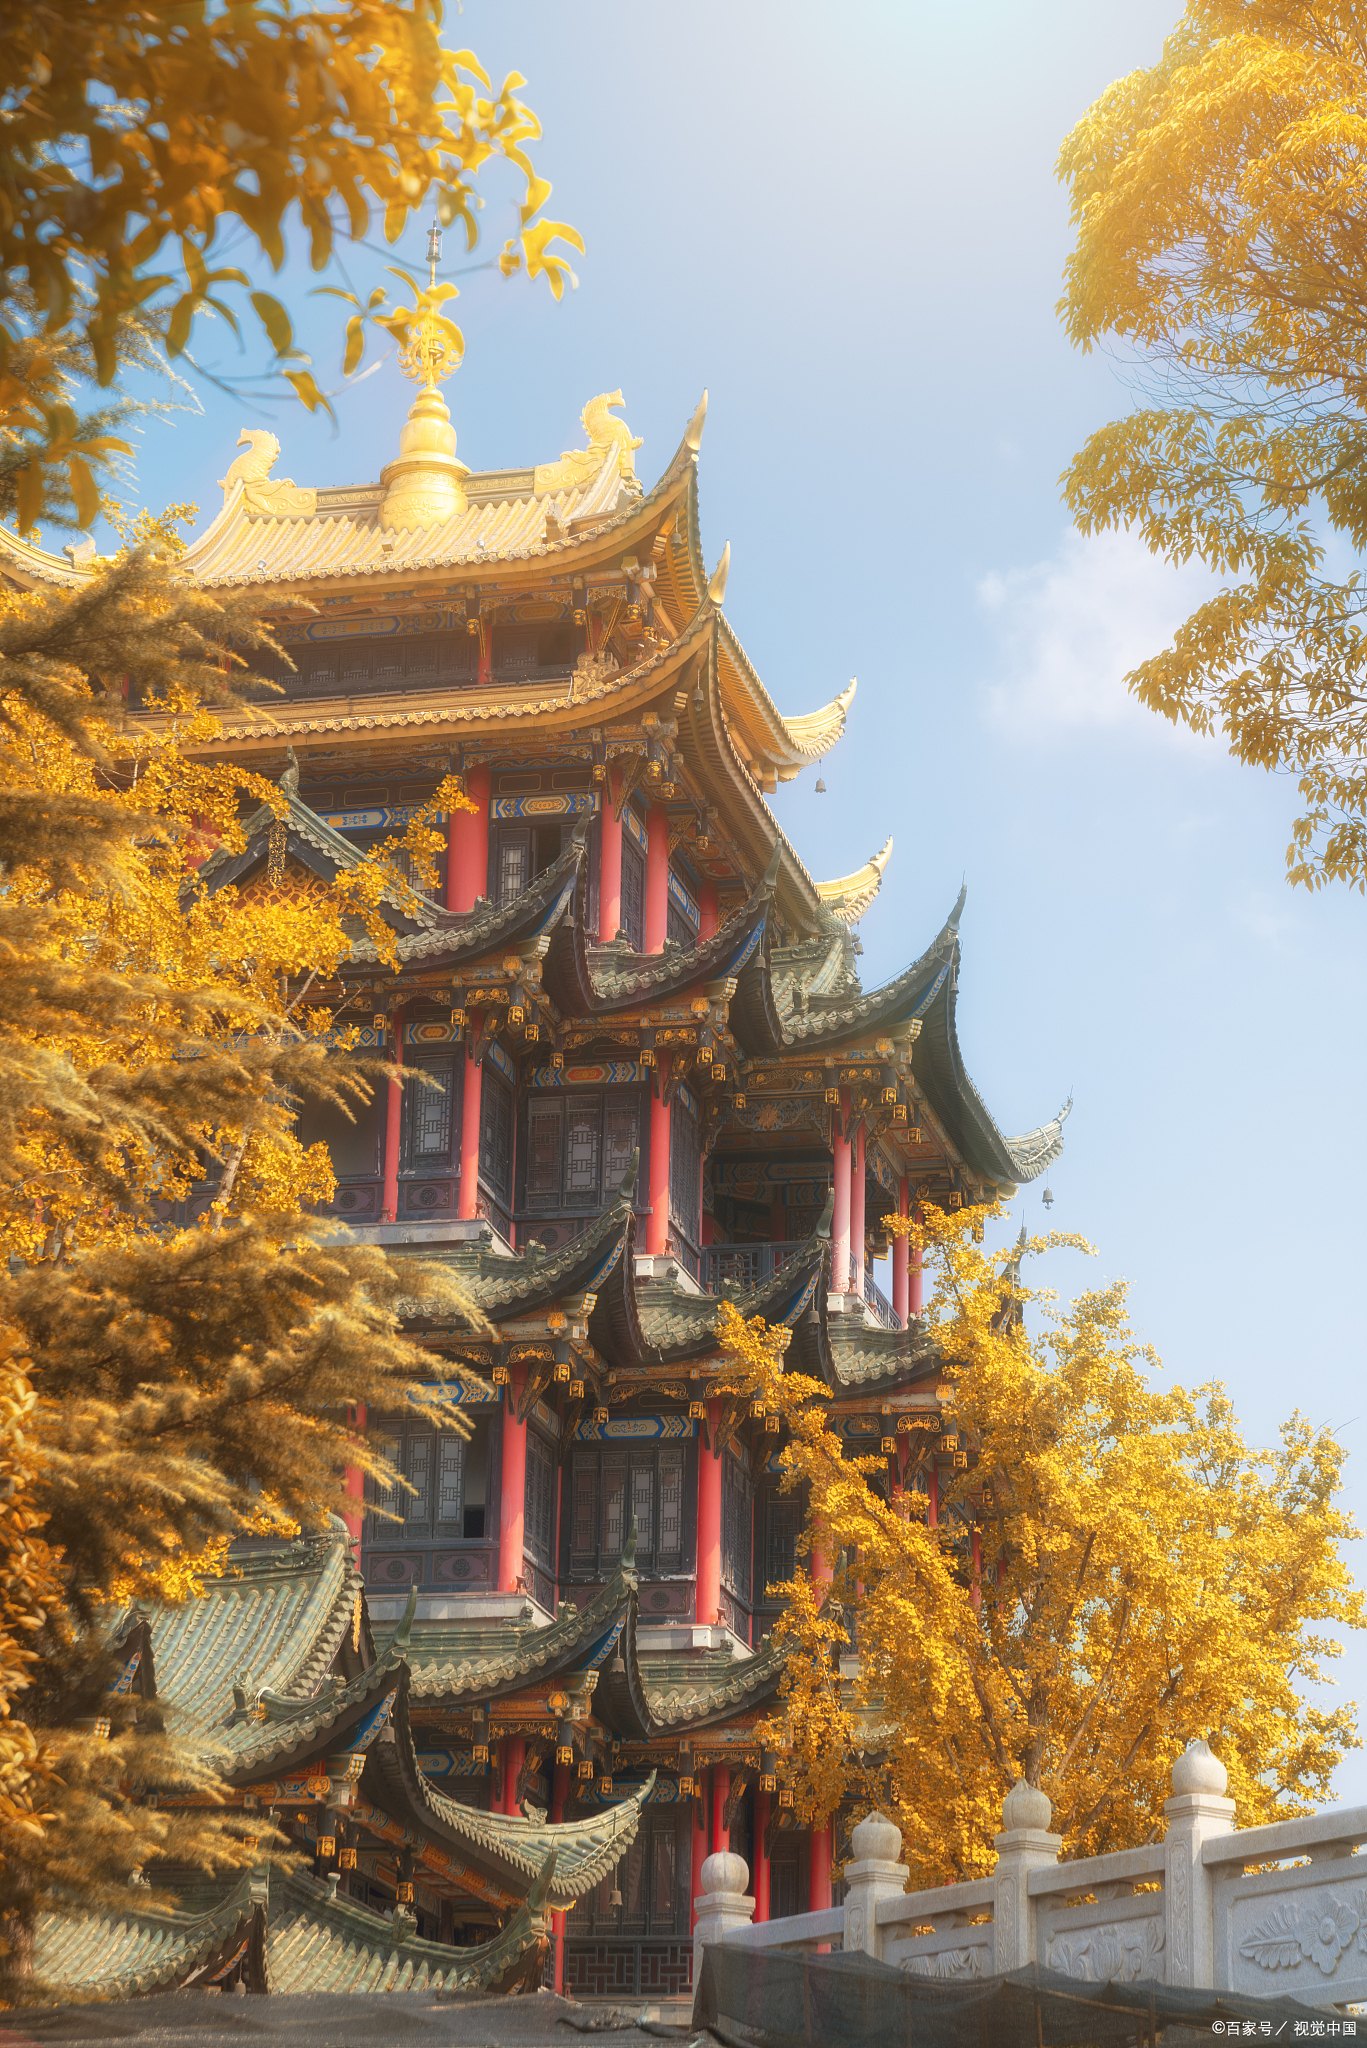 昭觉寺位于成都市郊,是四川省最大的佛教寺庙之一